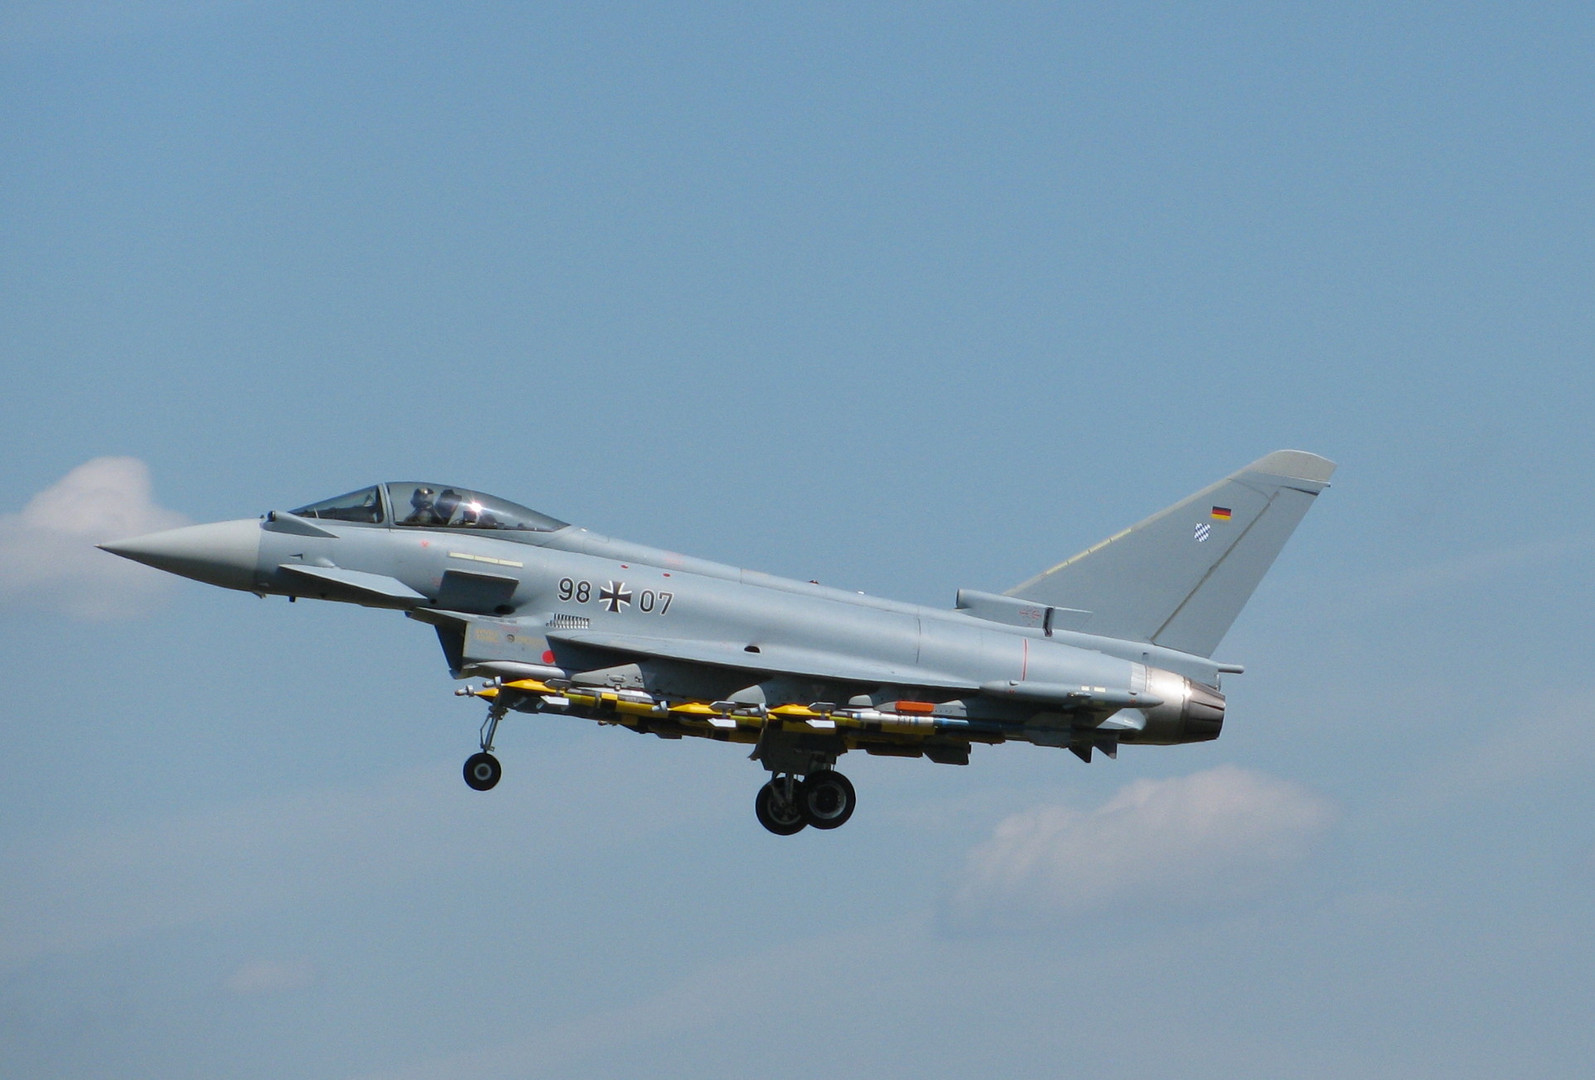 Eurofighter Typhoon Testflug